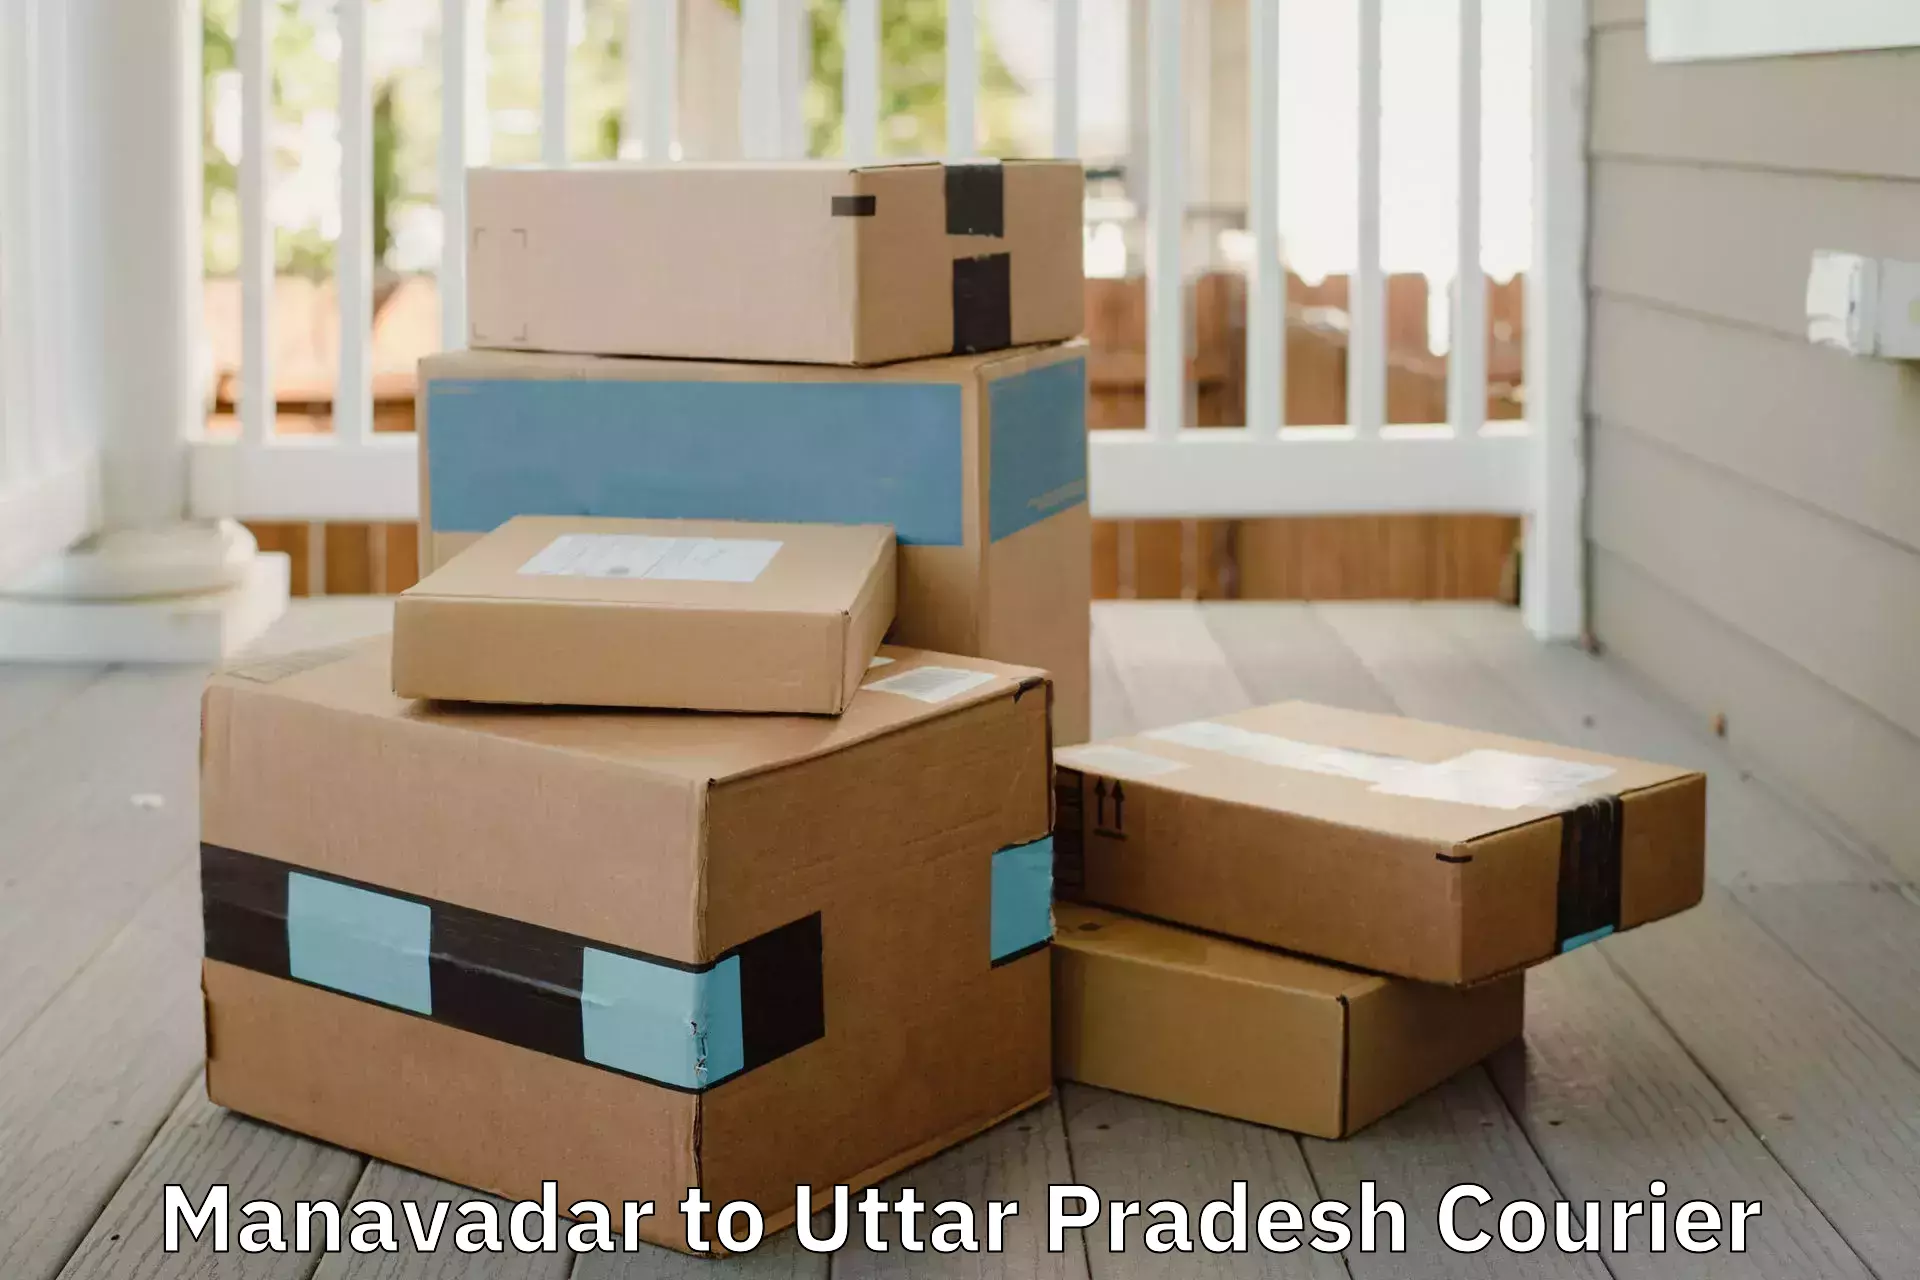 Furniture transport solutions Manavadar to Varanasi